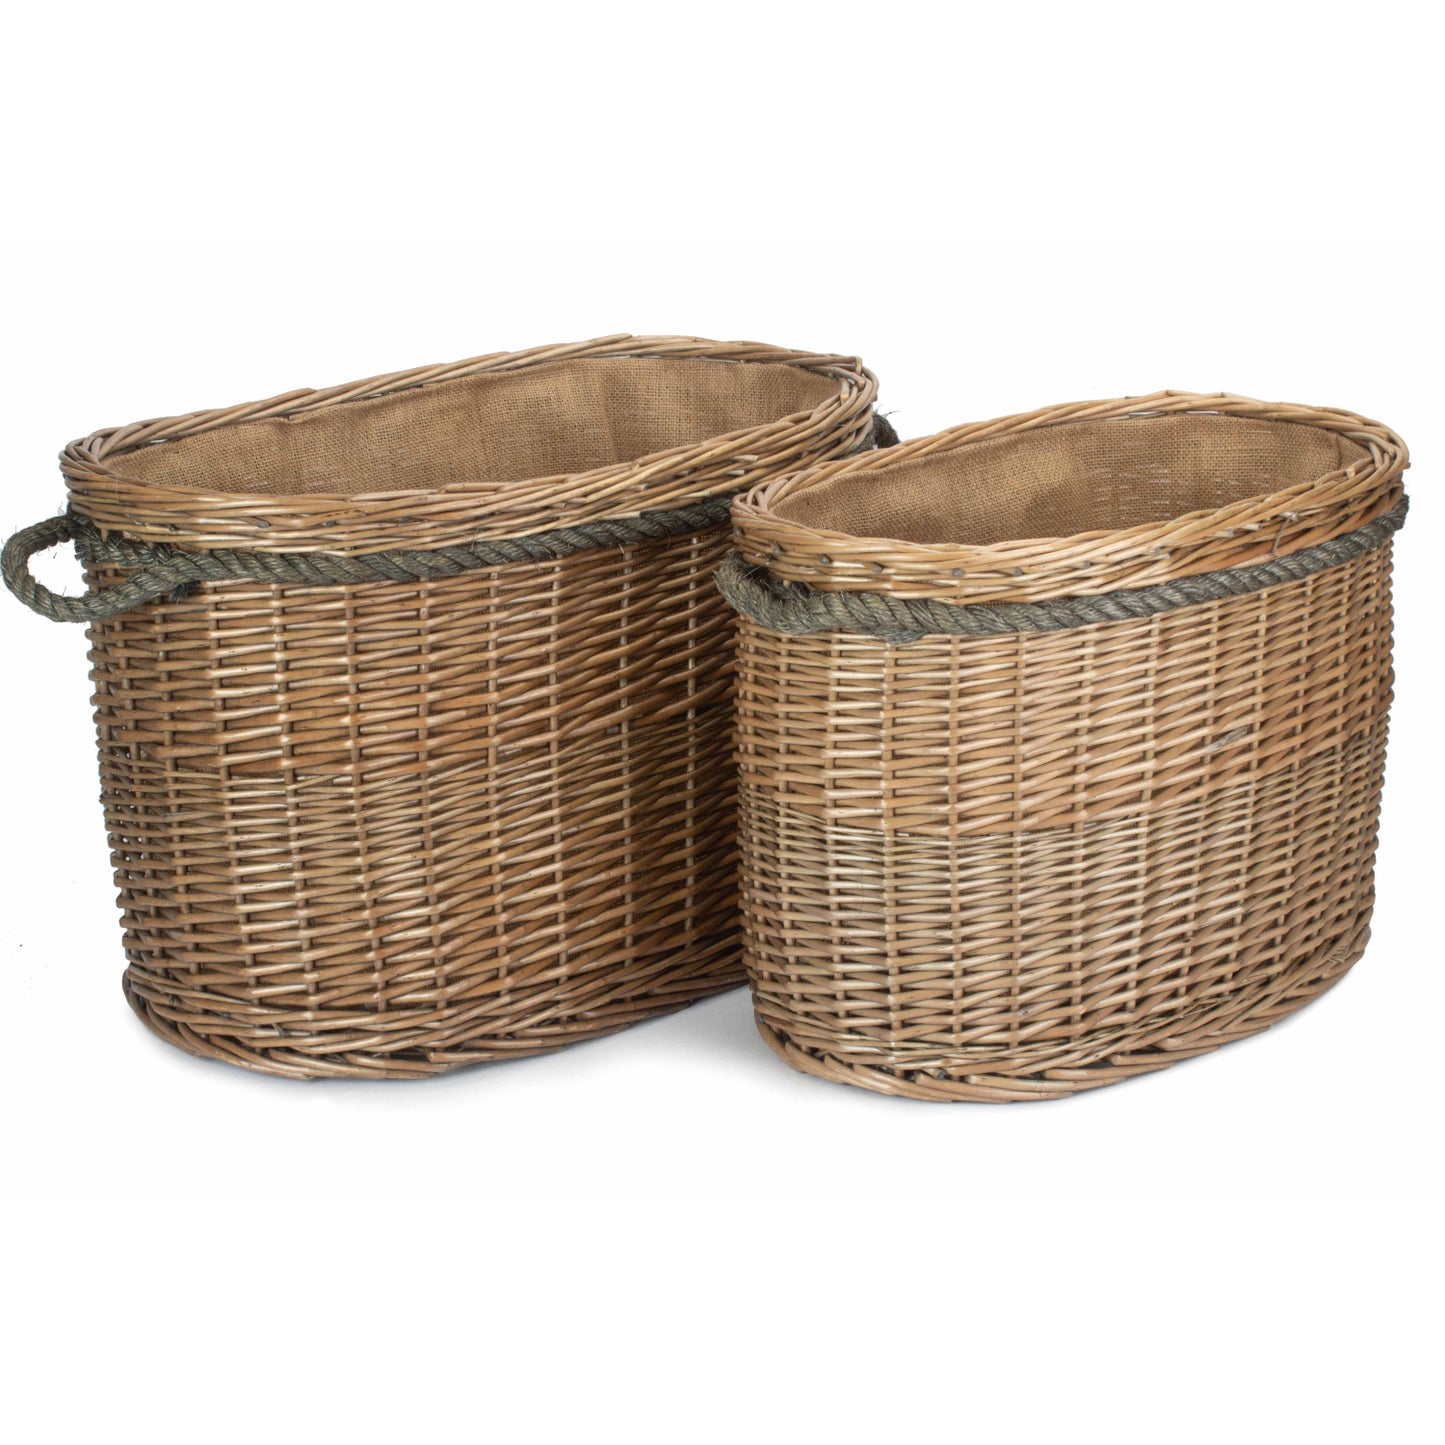 Set 2 Oval Rope Handled Log Baskets